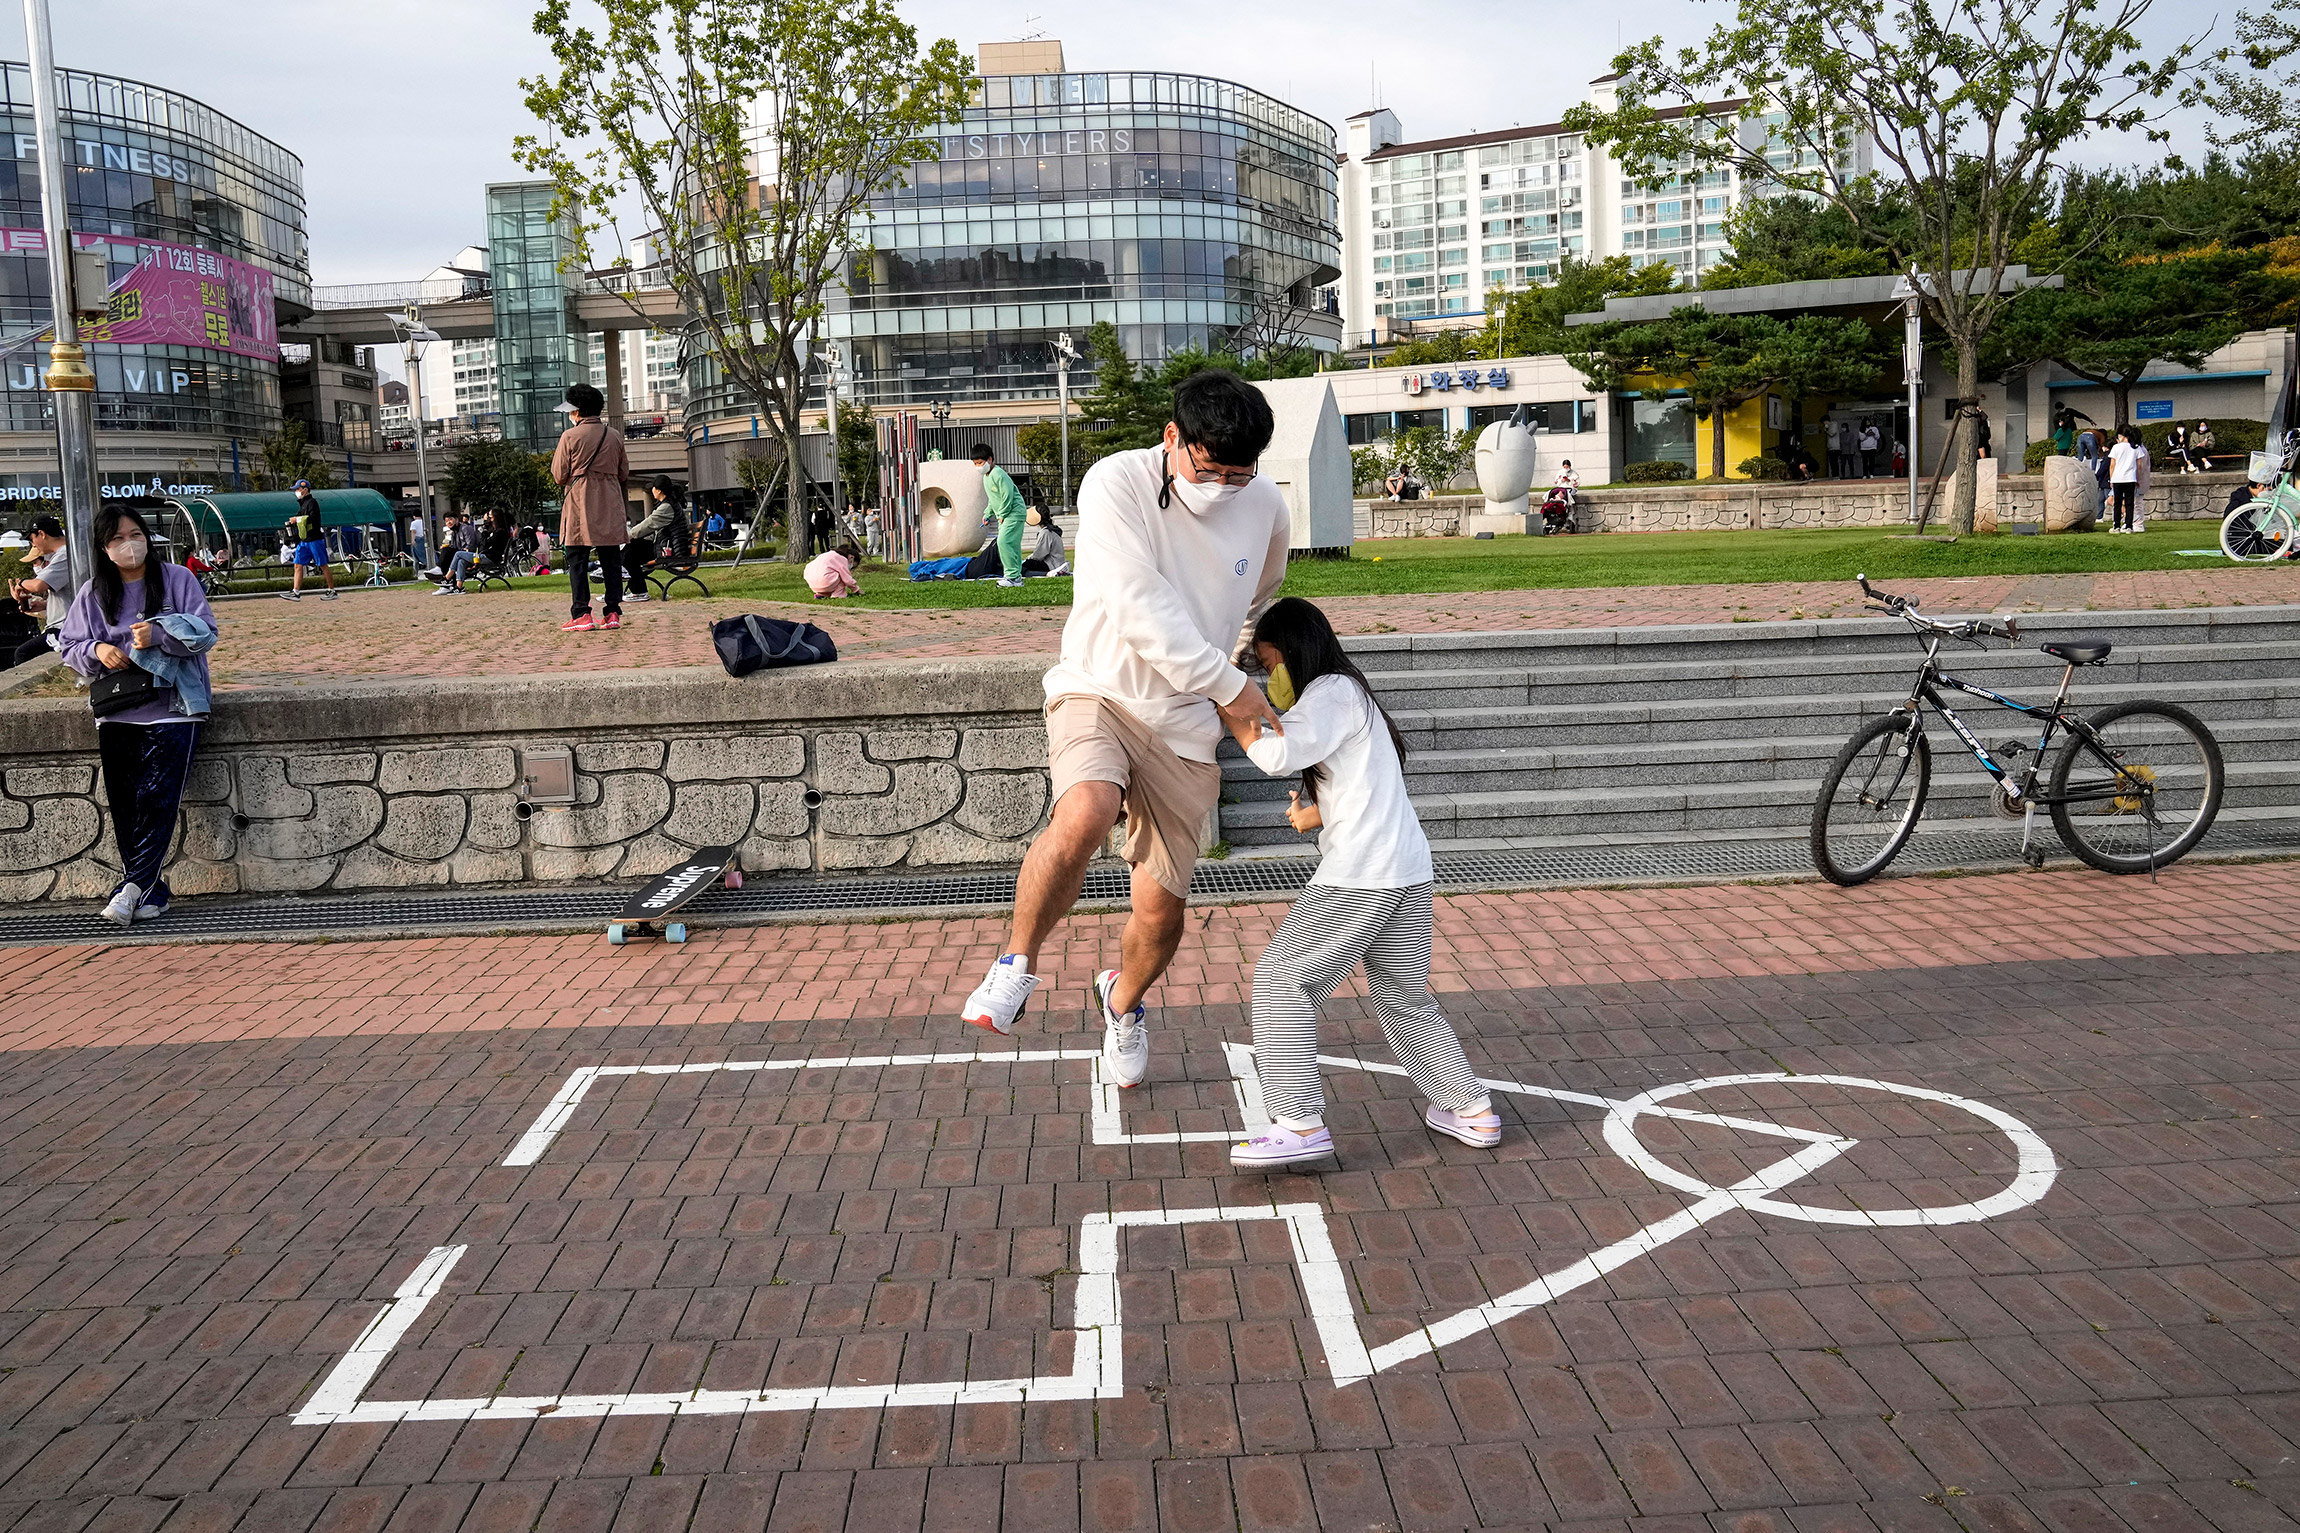 11 октября, Коян (Южная Корея). Мужчина и его дочь принимают участие в &laquo;игре в кальмара&raquo;